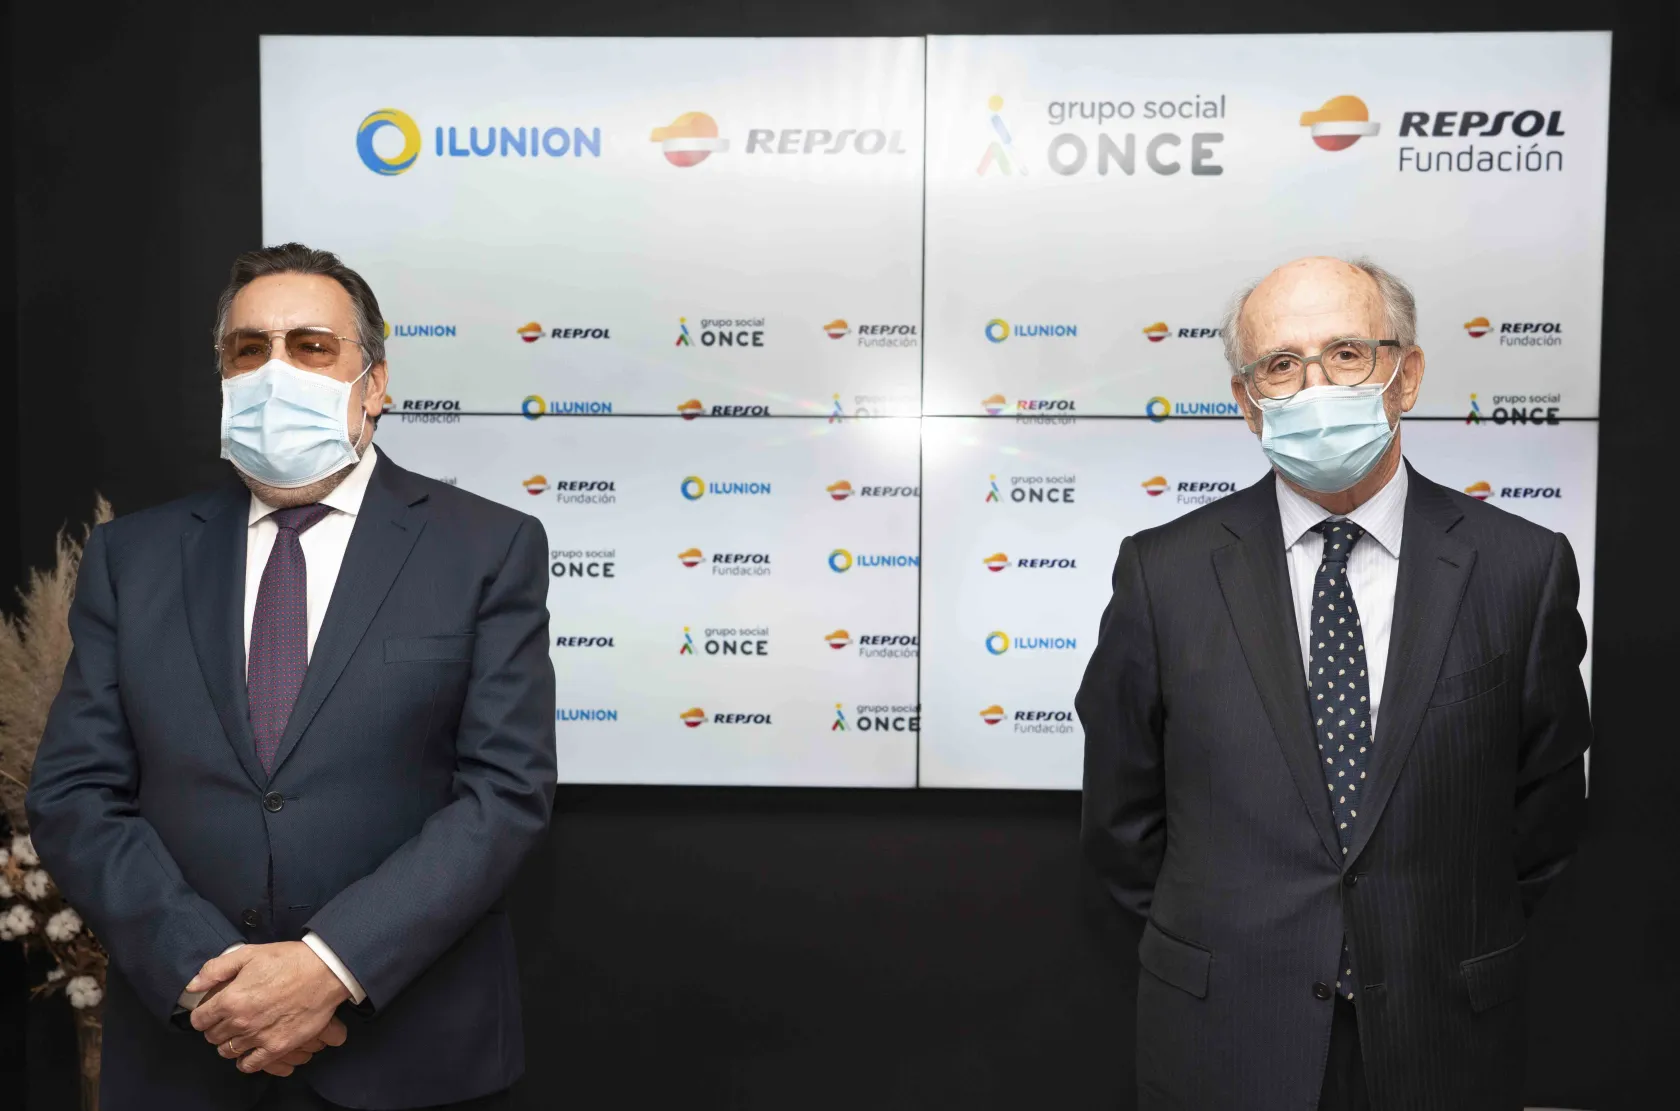 De izquierda a derecha, el presidente del Grupo Social ONCE, Miguel Carballeda, y el presidente de Repsol y Fundación Repsol, Antonio Brufau